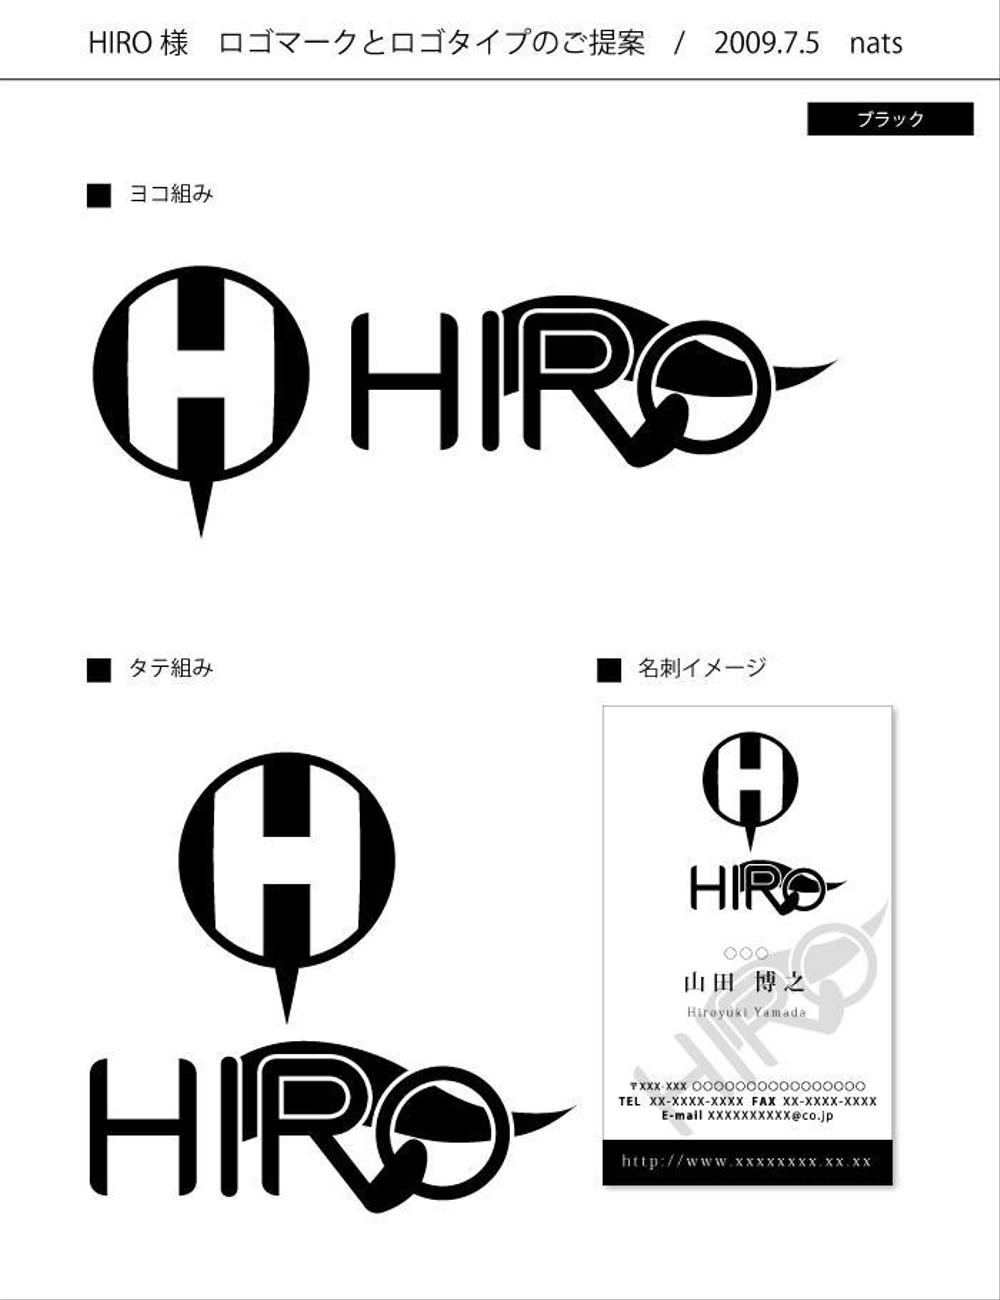 自分（HIRO)のロゴを考えてください